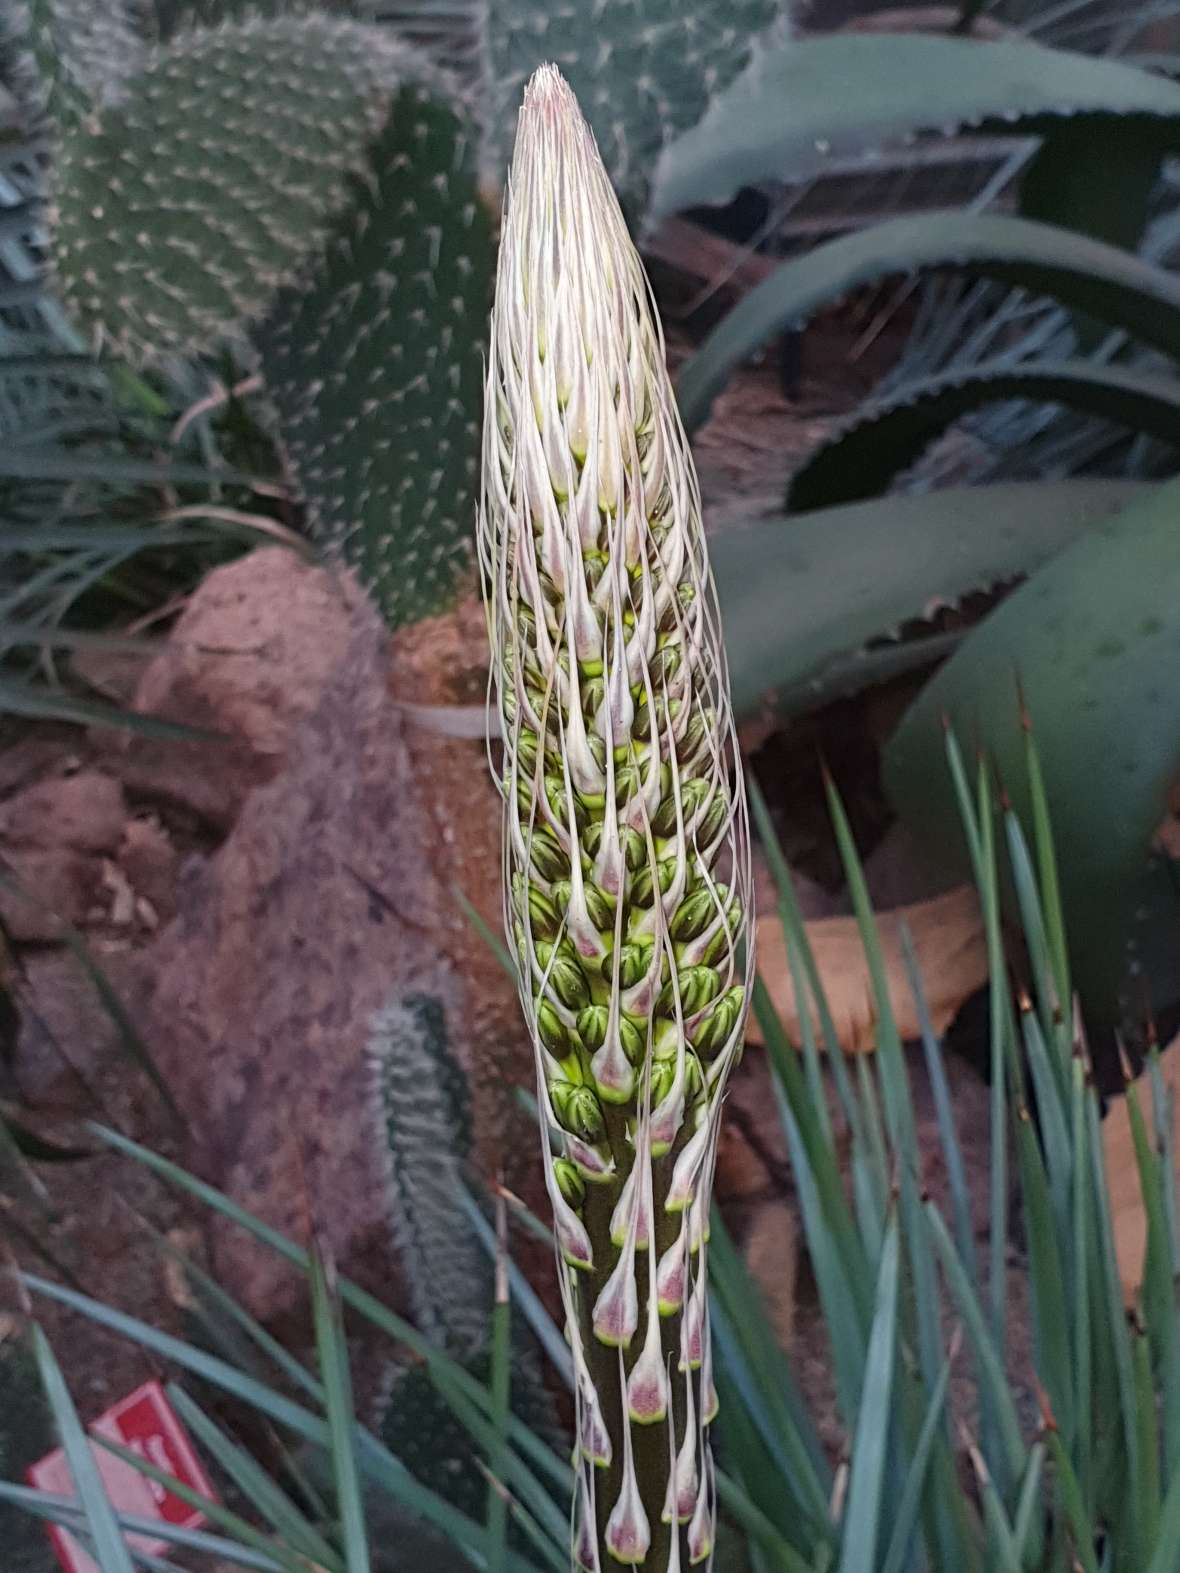 zu sehen ist eine weiße längliche Blüte, dahinter sieht man Kaktuspflanzen